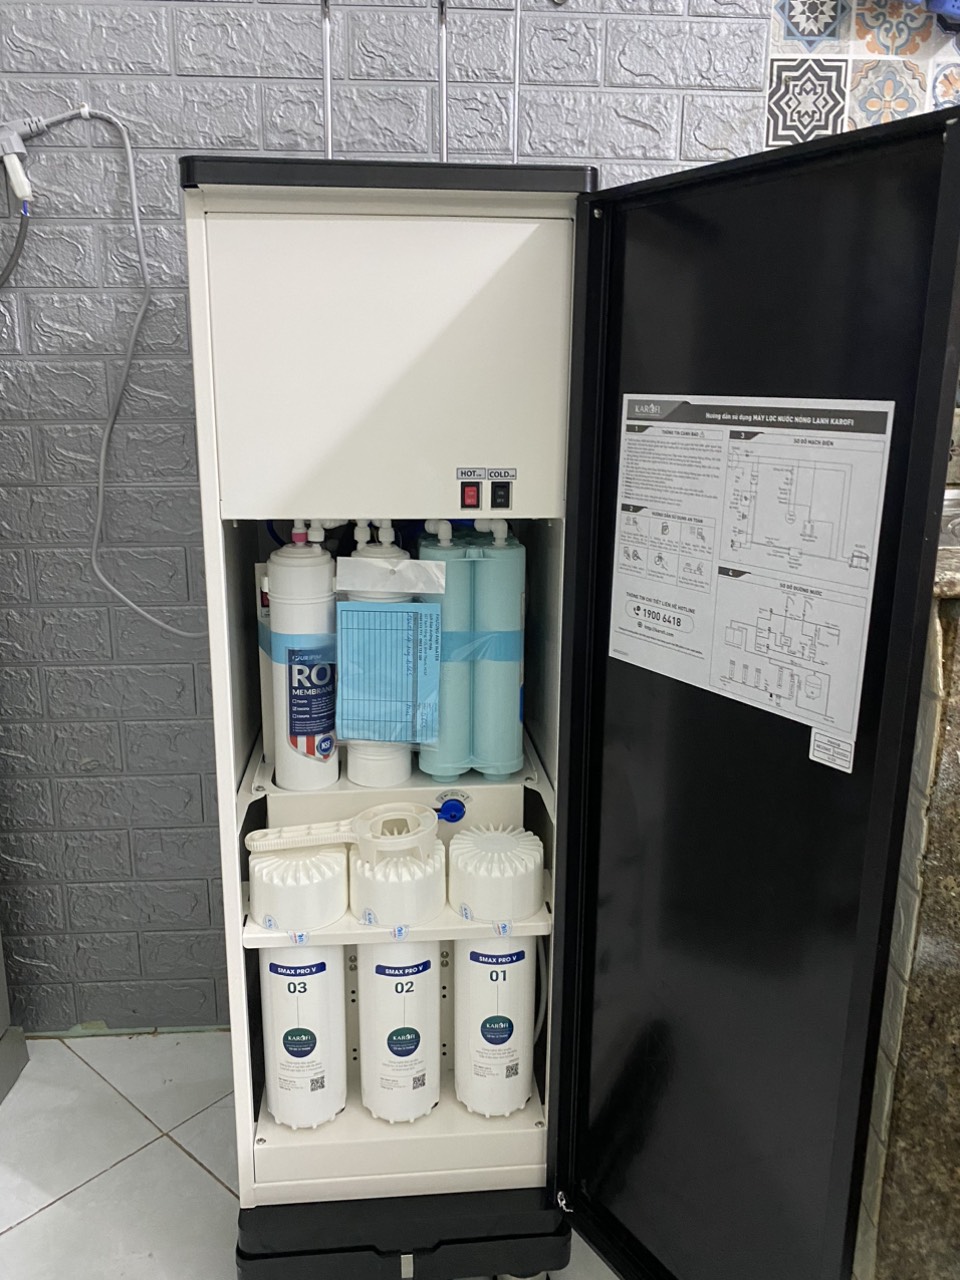   Hình ảnh lắp đặt thực tế máy lọc nước nóng lạnh Karofi KAD-D66S